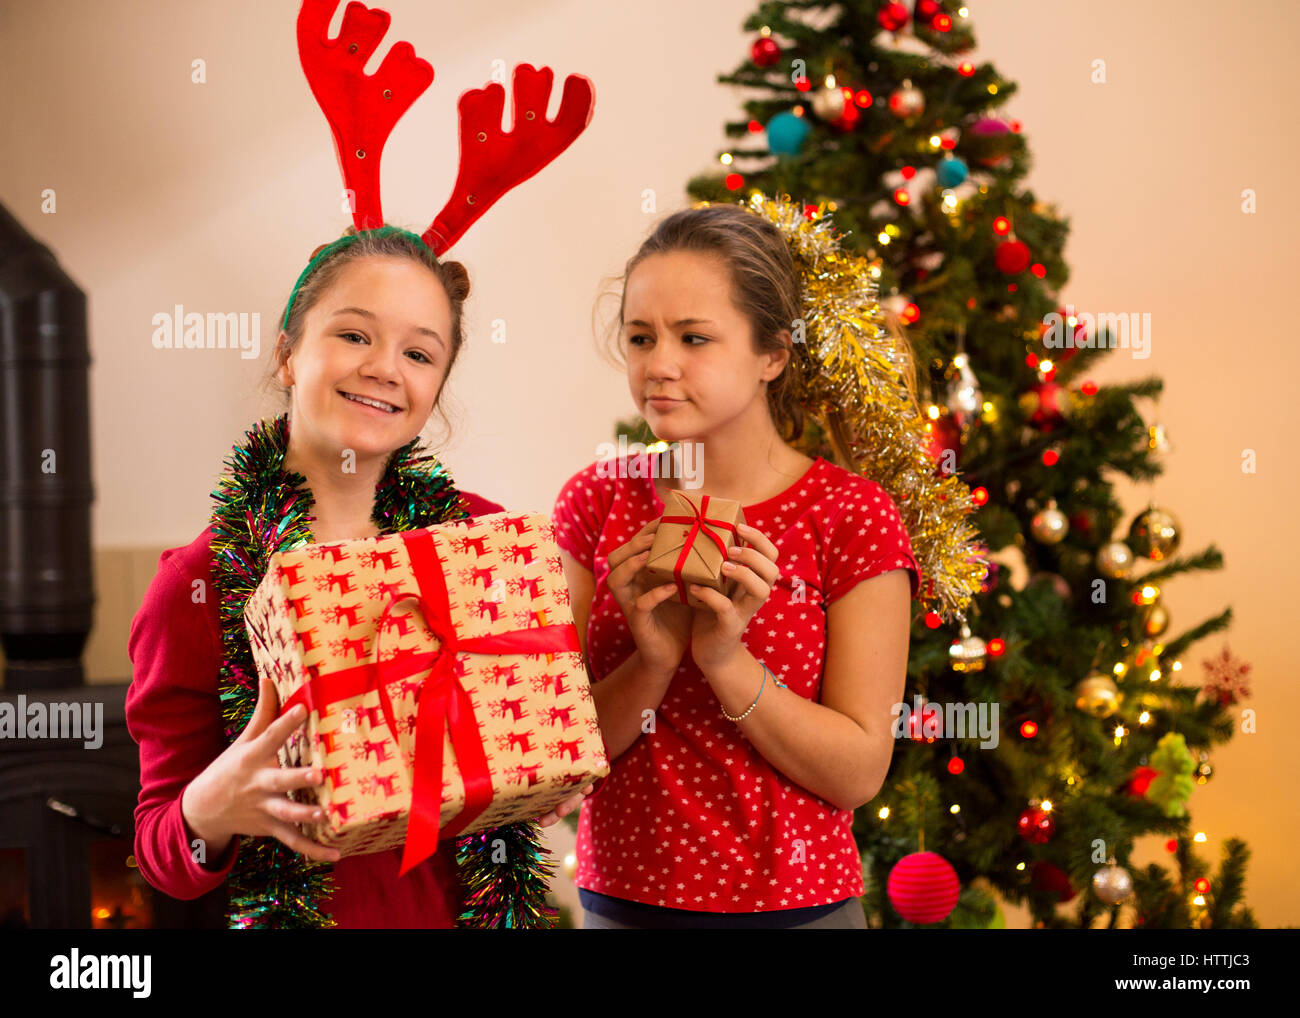 Zwei Schwestern posieren zu Weihnachten. Man hält ein großes Geschenk und das andere schaut ihr mit einem eifersüchtigen Gesicht als sie ein kleines Geschenk hält. Stockfoto